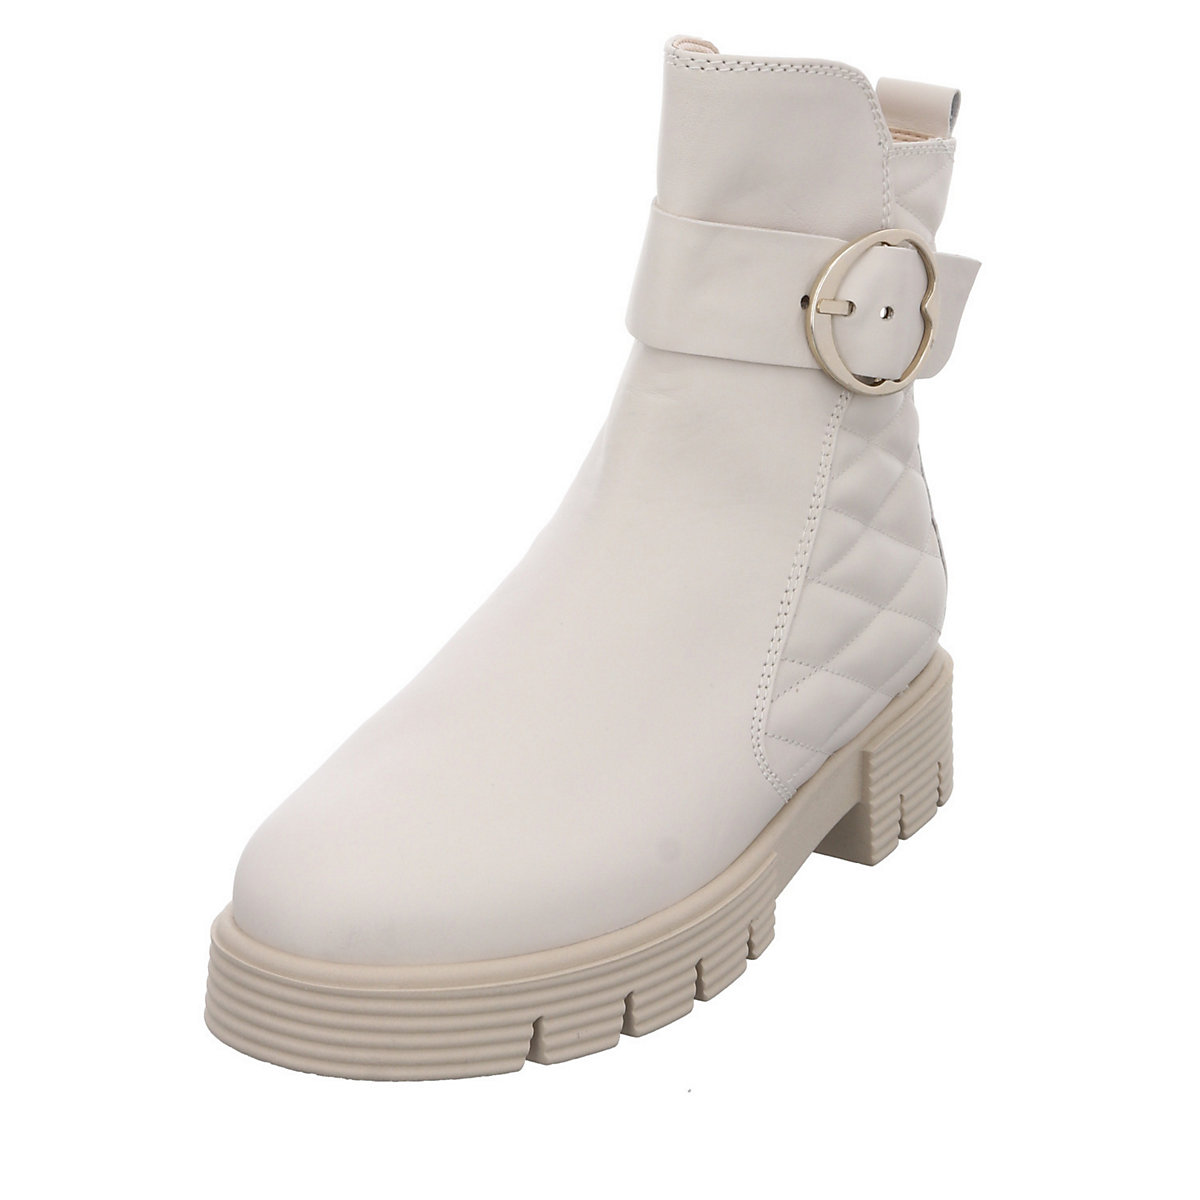 Gabor Damen Stiefel Schuhe Davos Boots Elegant Freizeit Glattleder uni Klassische Stiefel braun